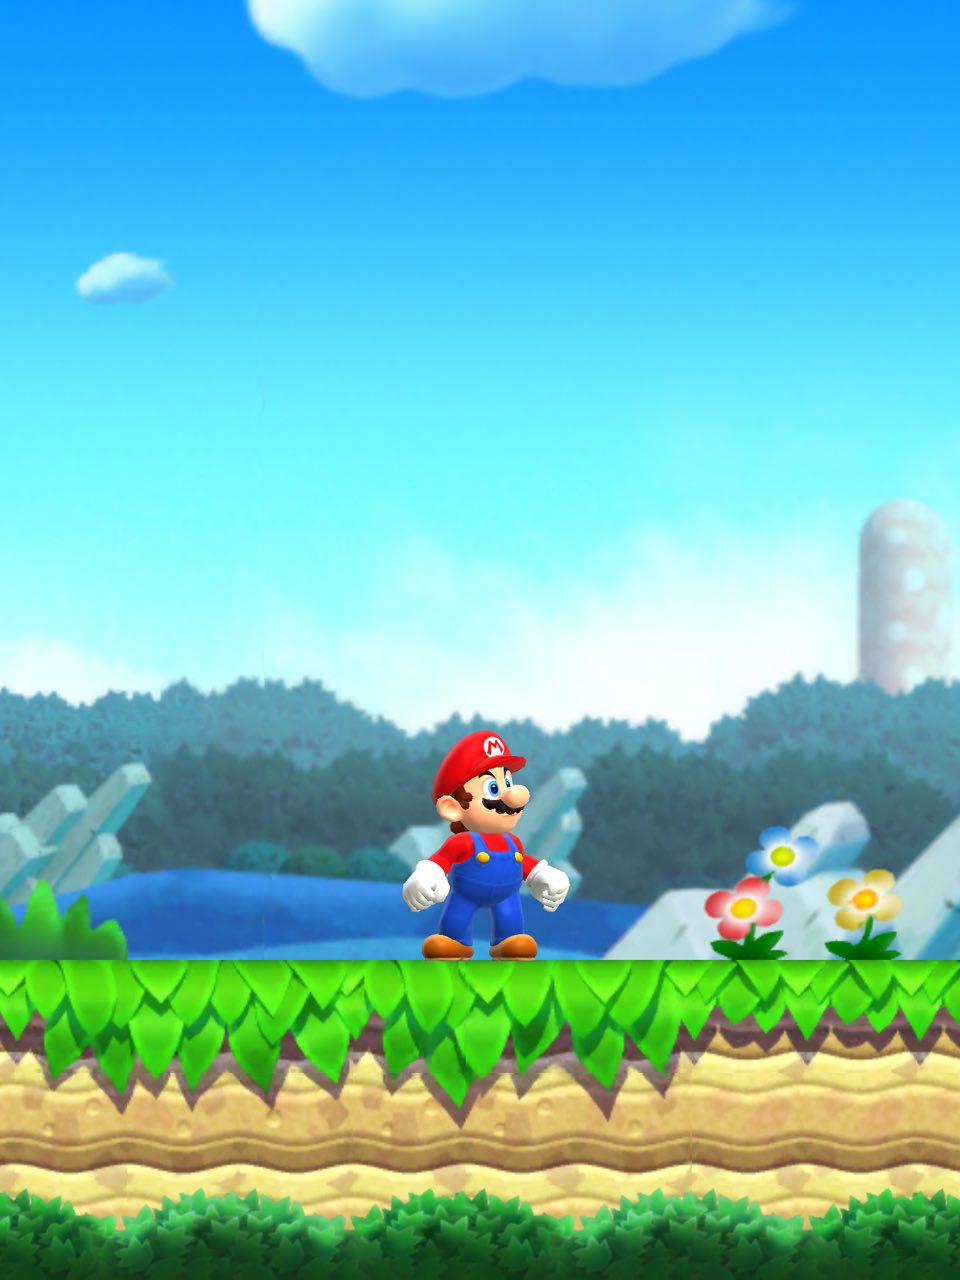 Super Mario Run, Nintendo keren di iPhone 6